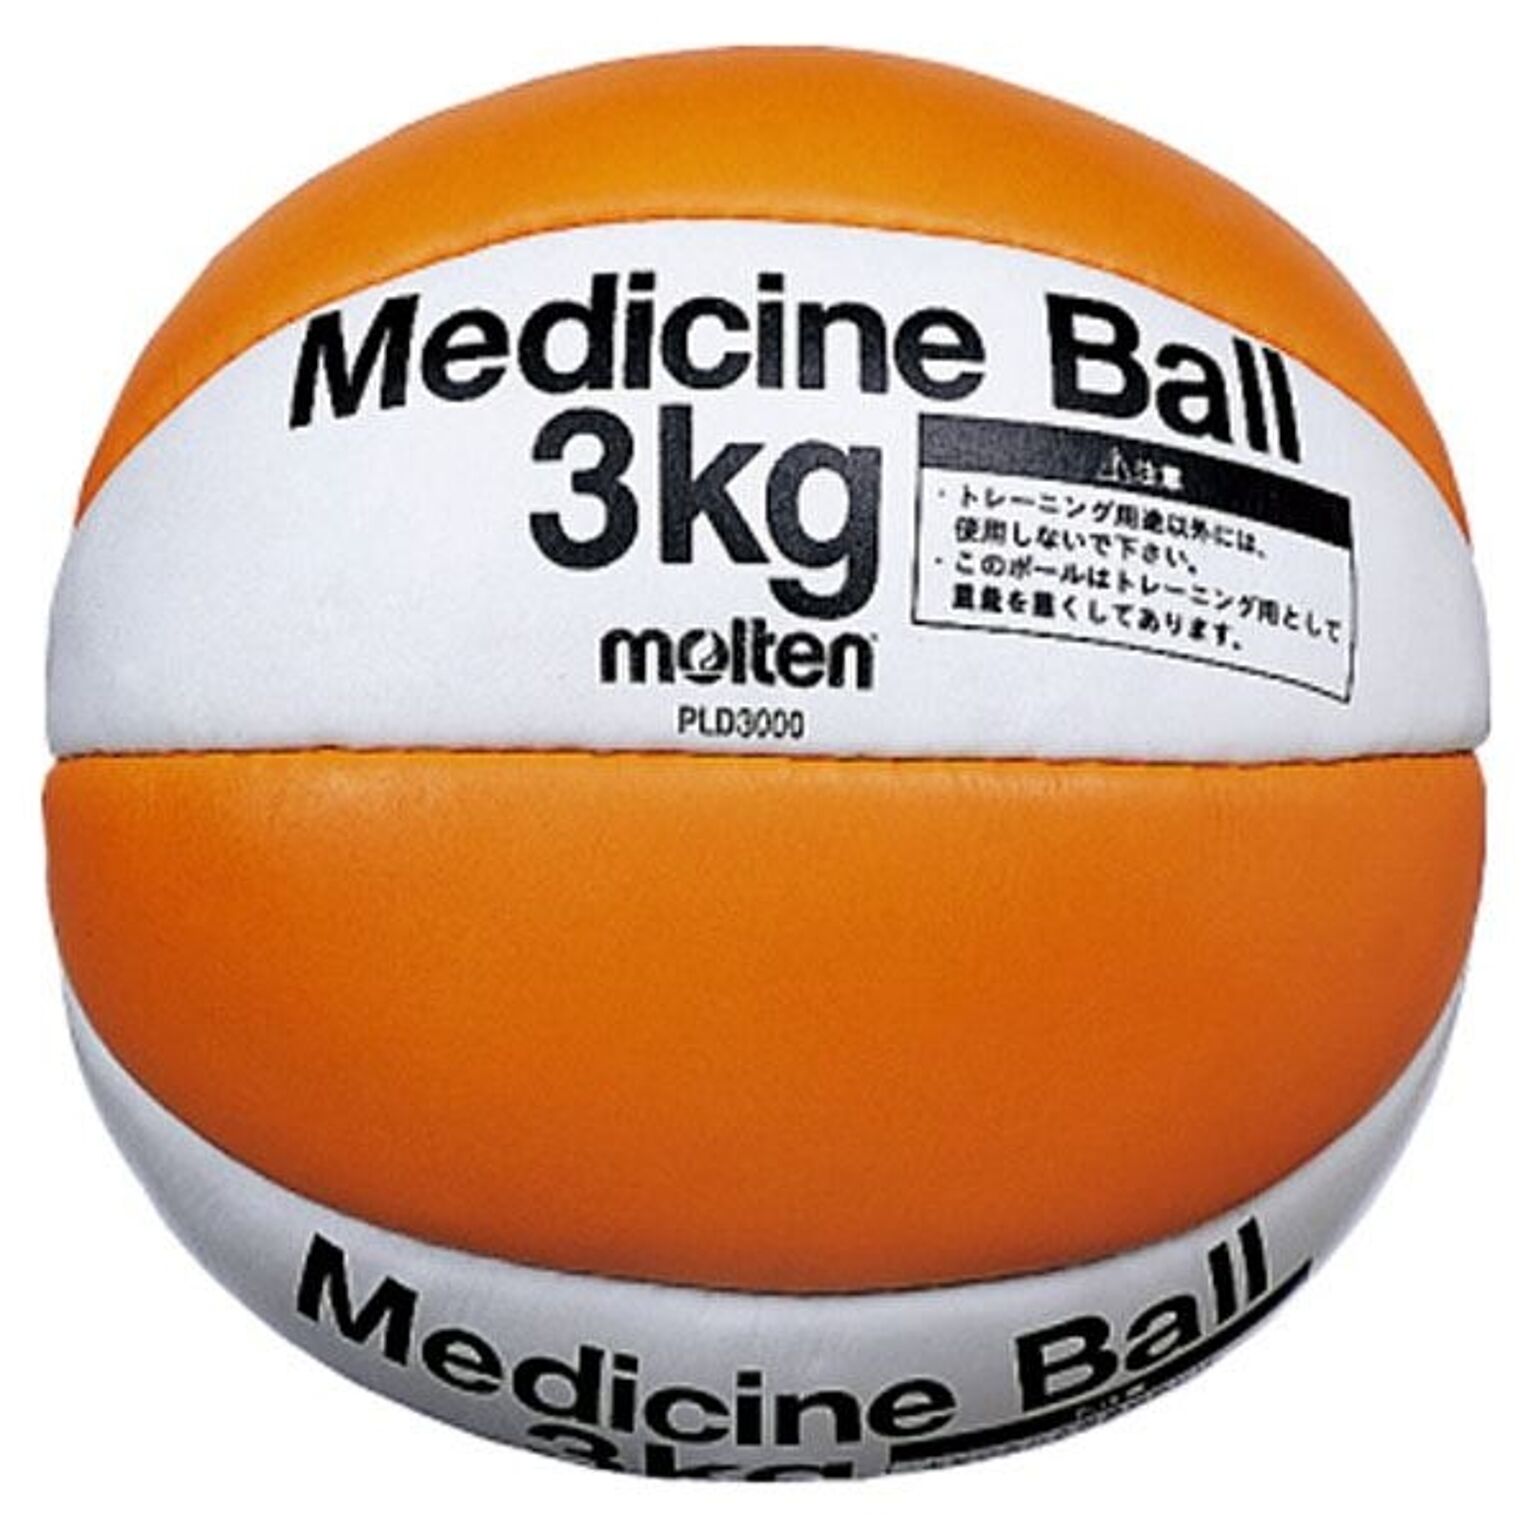 【モルテン Molten】 メディシンボール/バスケットボール 【重量約3kg】 天然皮革 PLD3000 〔運動 スポーツ用品〕